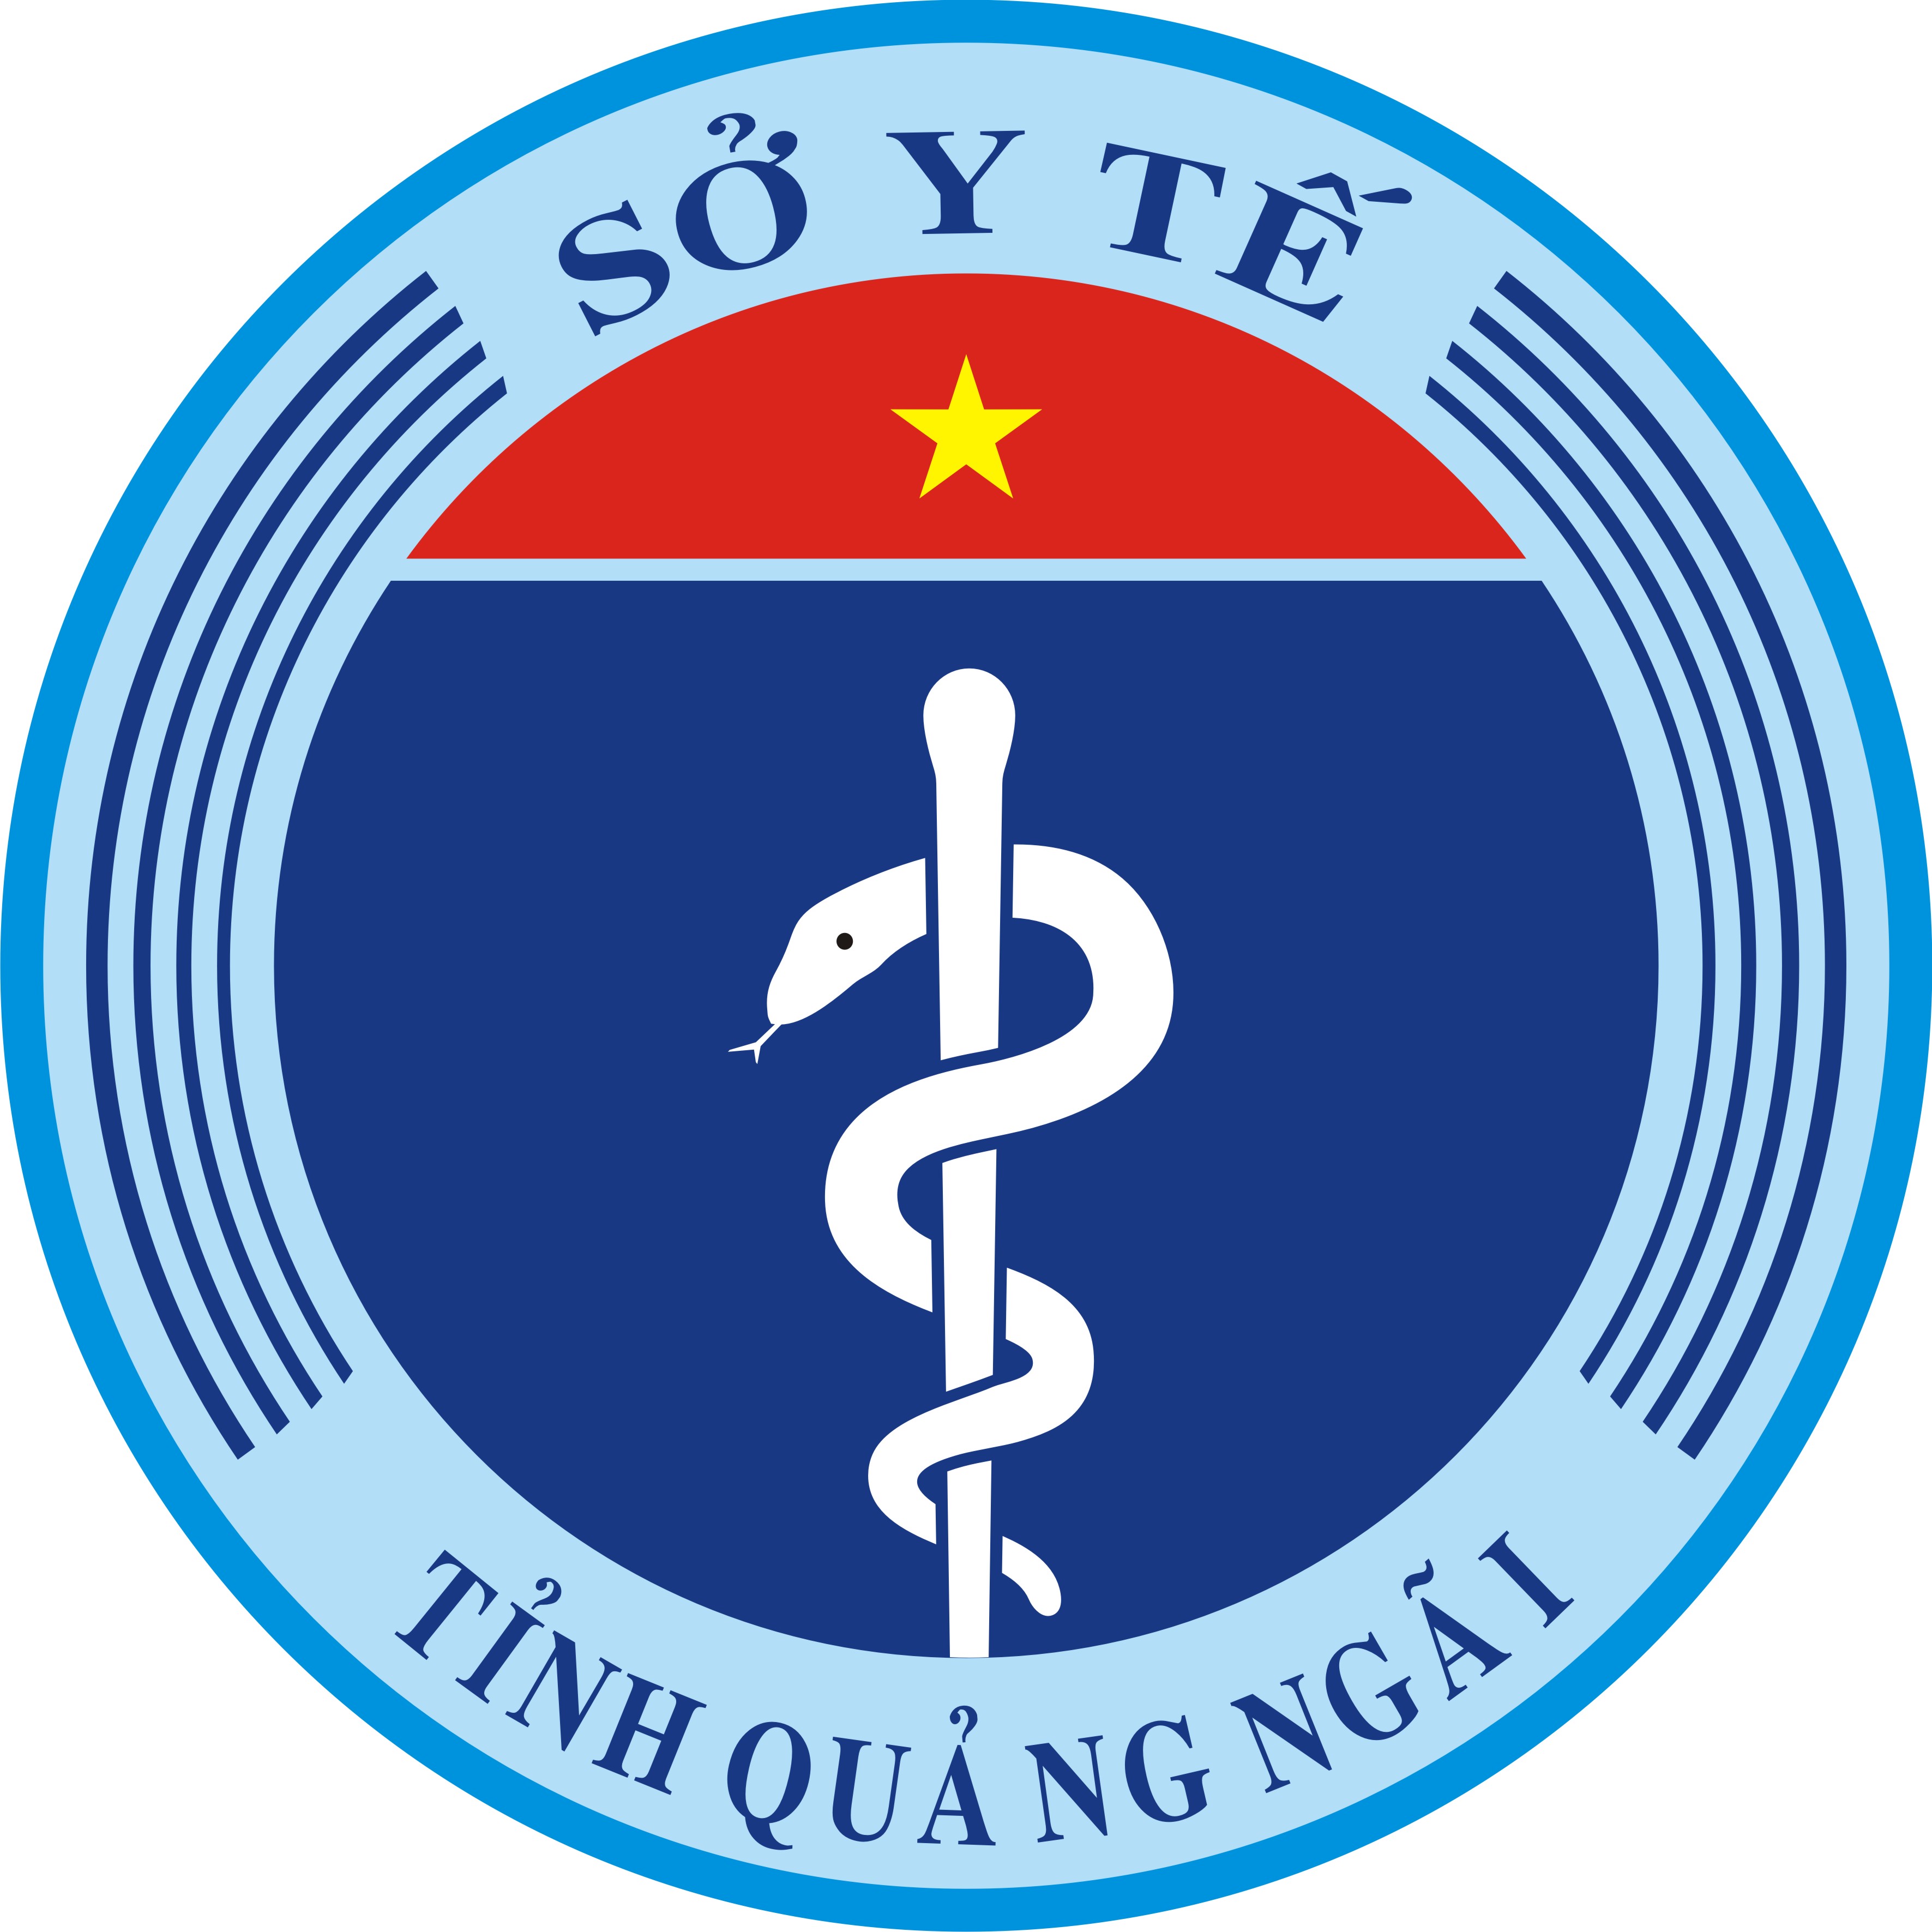 Sở Y tế ban hành Kế hoạch xét tuyển viên chức cho các đơn vị sự nghiệp trực thuộc Sở Y tế tỉnh Quảng Ngãi năm 2020